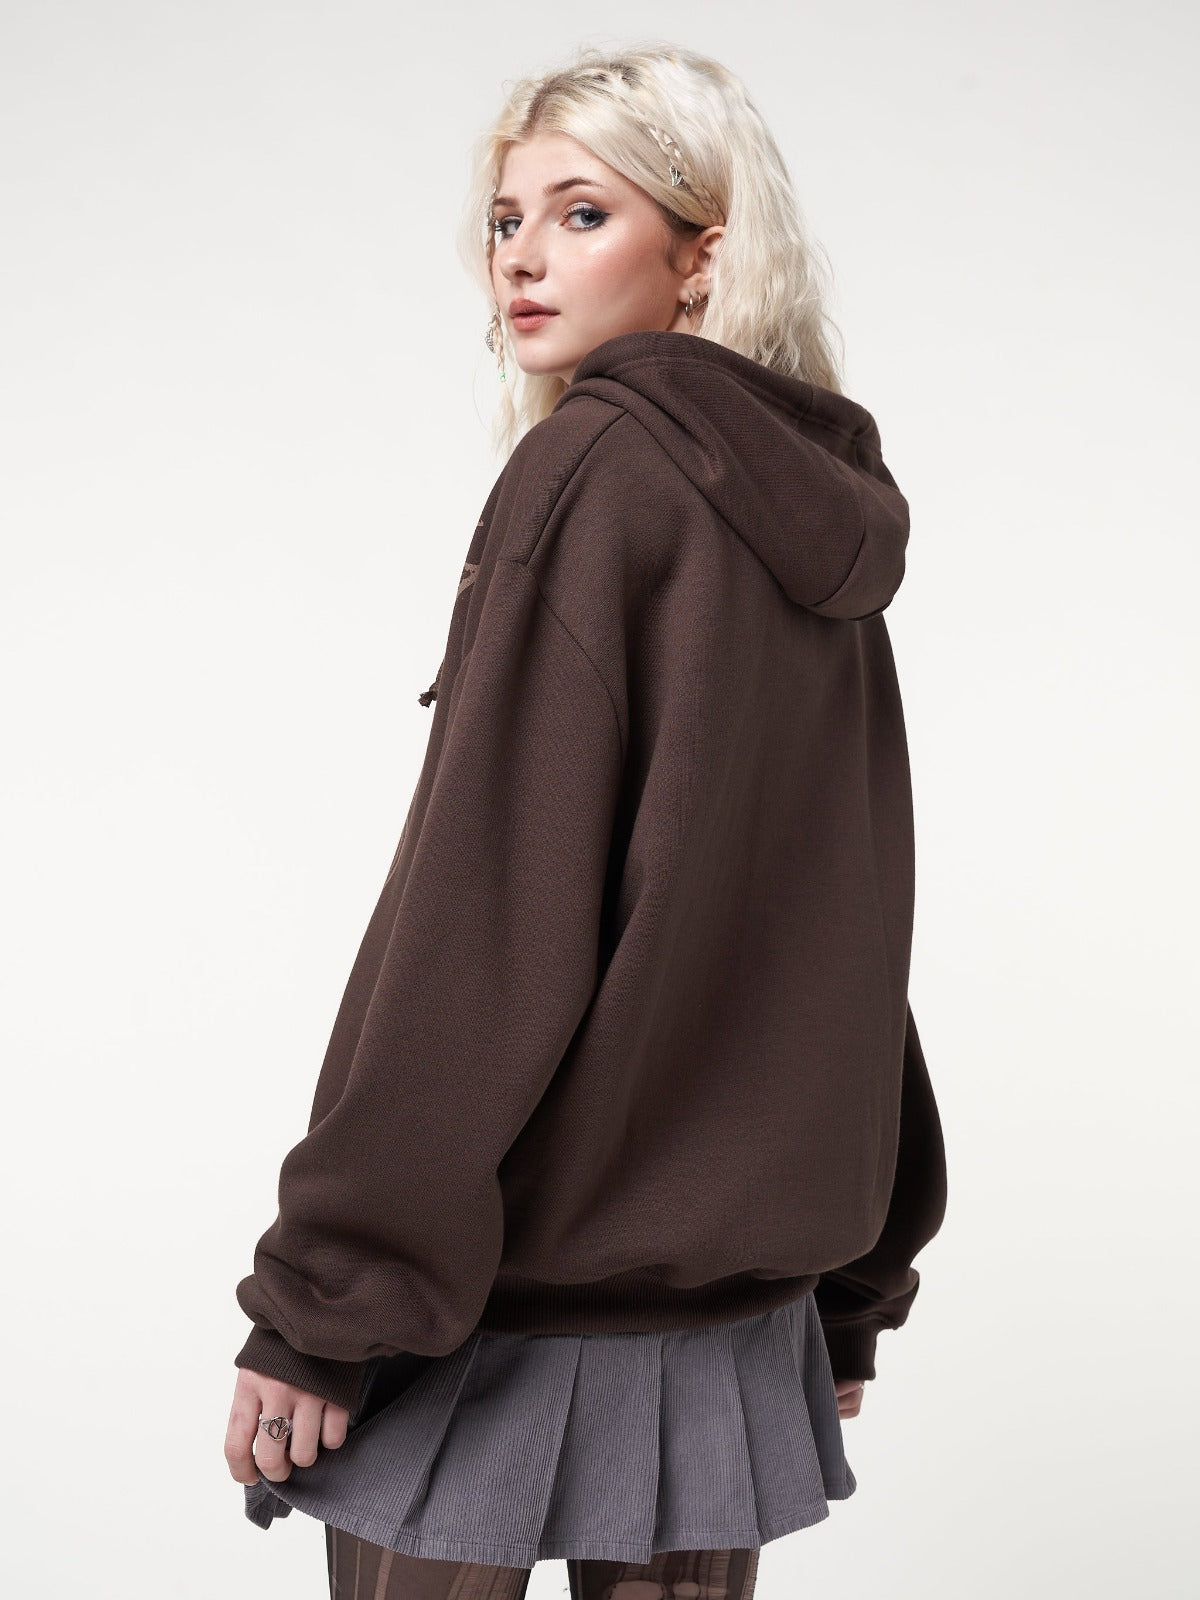 Zip up hoodie jacket in dark brown with fairy wings front print